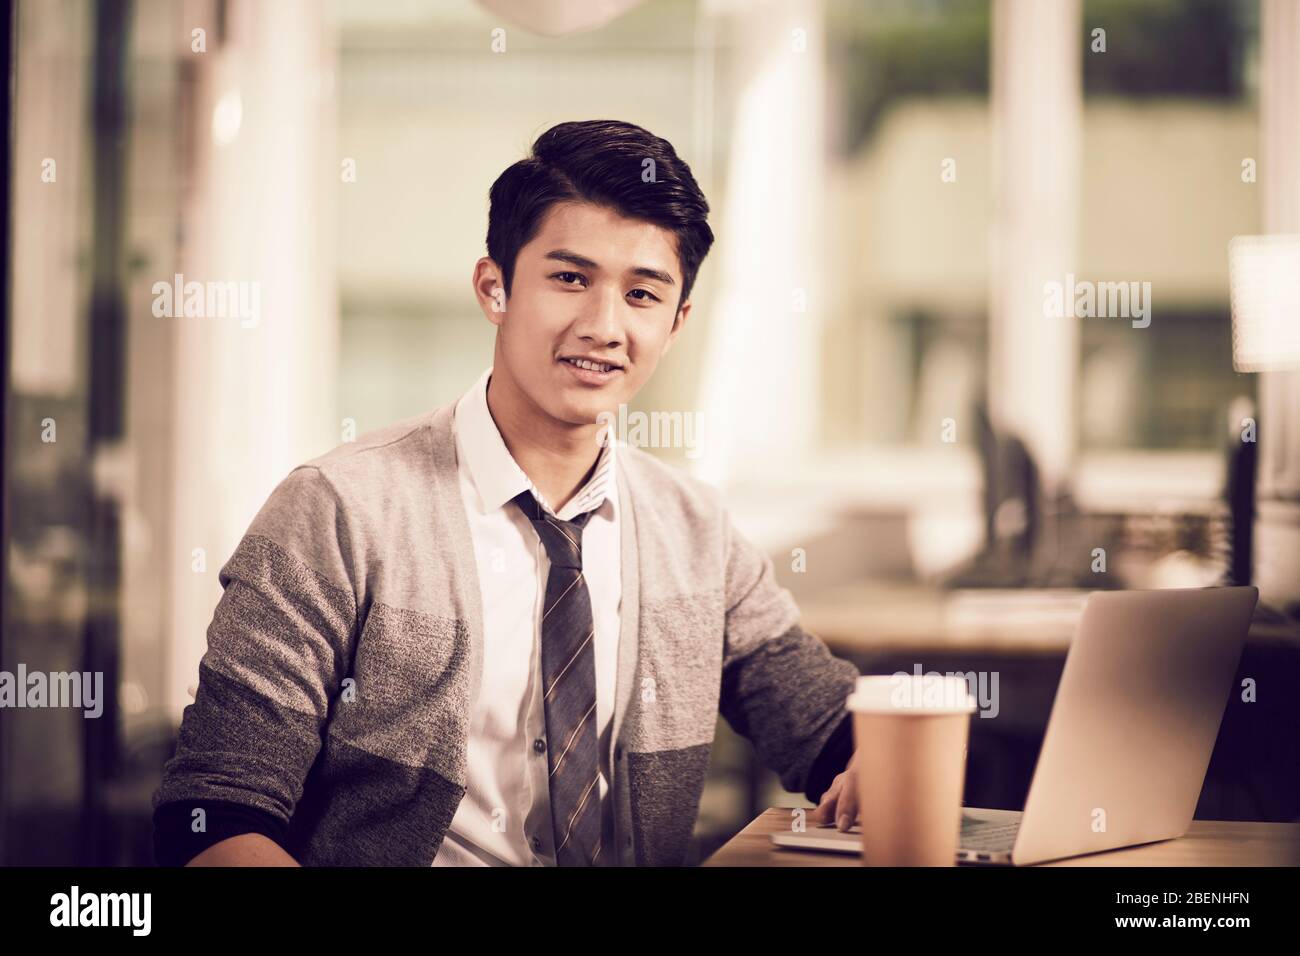 retrato de un empresario asiático joven y exitoso sentado en el escritorio mirando la cámara sonriendo Foto de stock